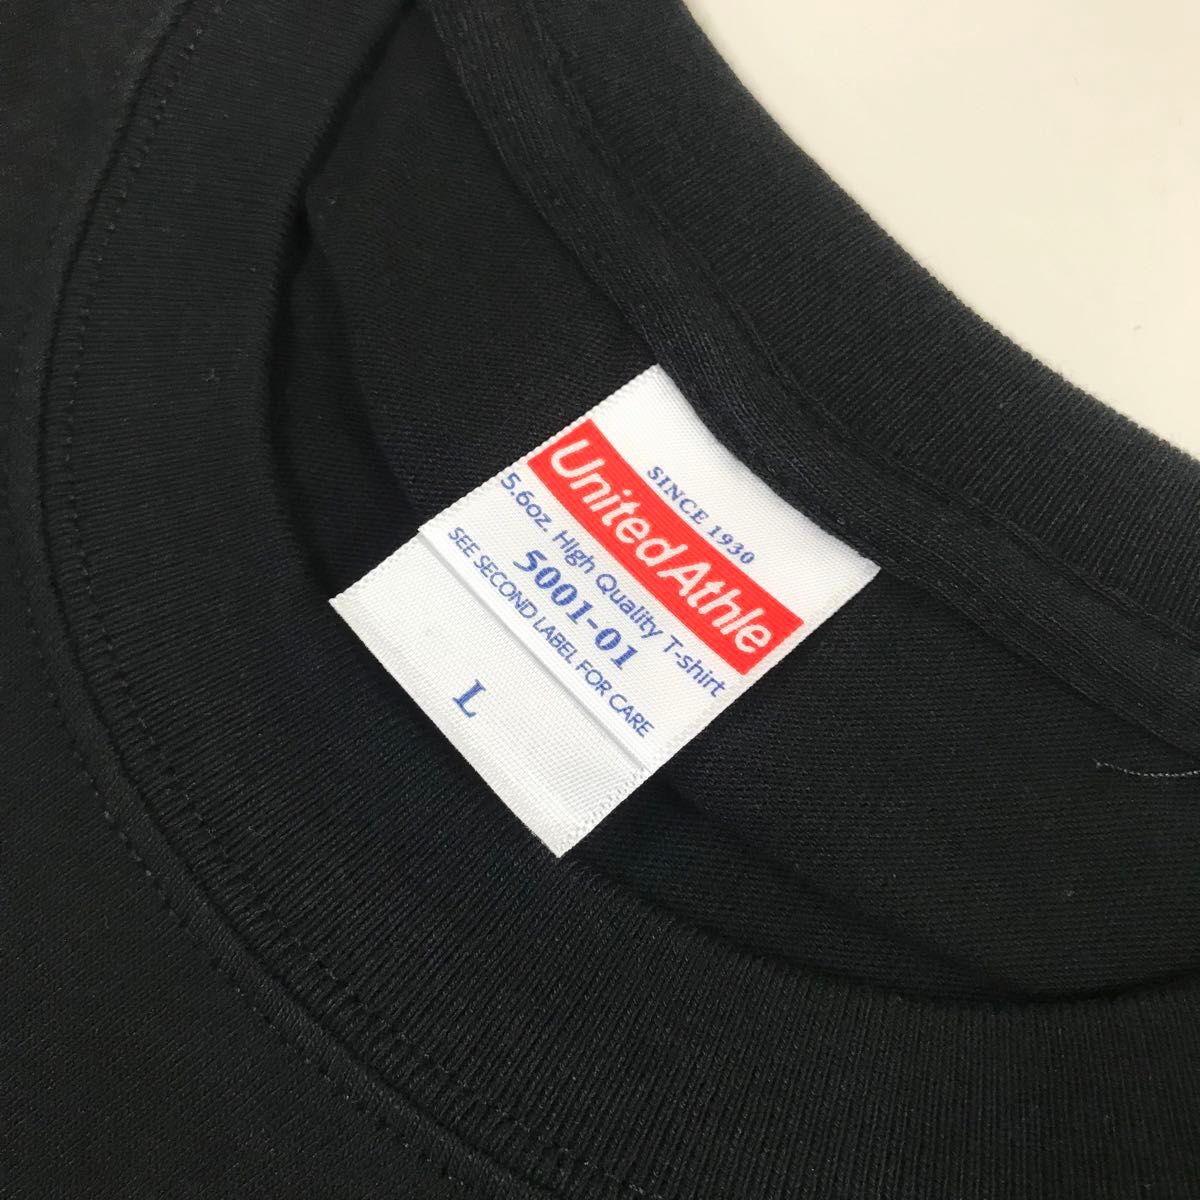 Tシャツ 半袖 5.6オンス ハイクオリティー【5001-01】L ブラック 綿100%